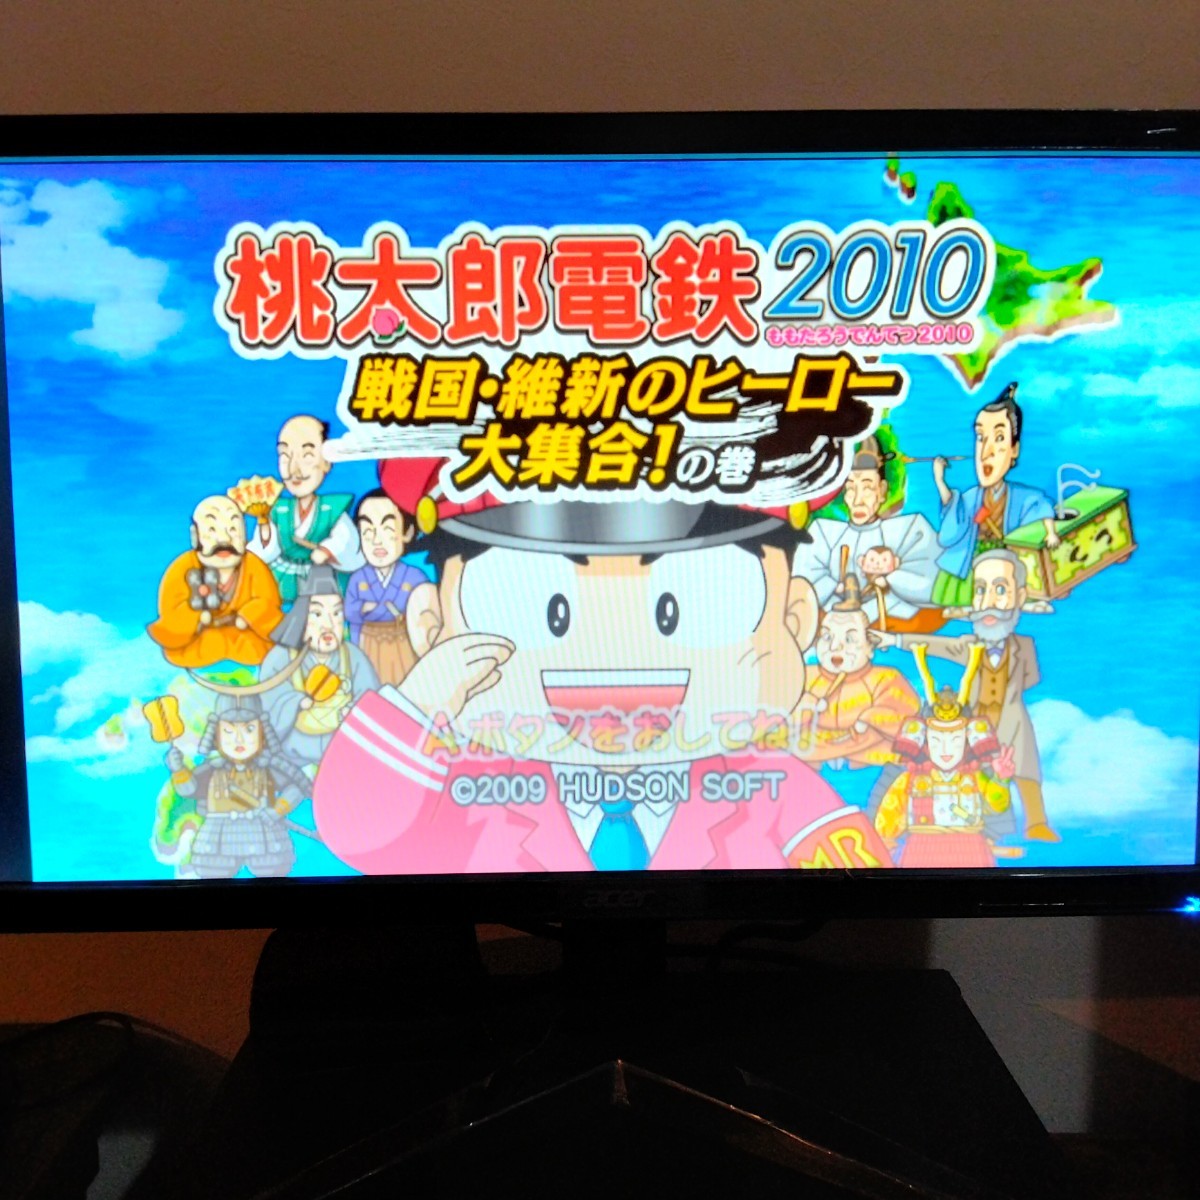 桃太郎電鉄2010  戦国・維新のヒーロー大集合の巻 Wii ソフト 桃太郎電鉄 桃鉄  Wiiソフト